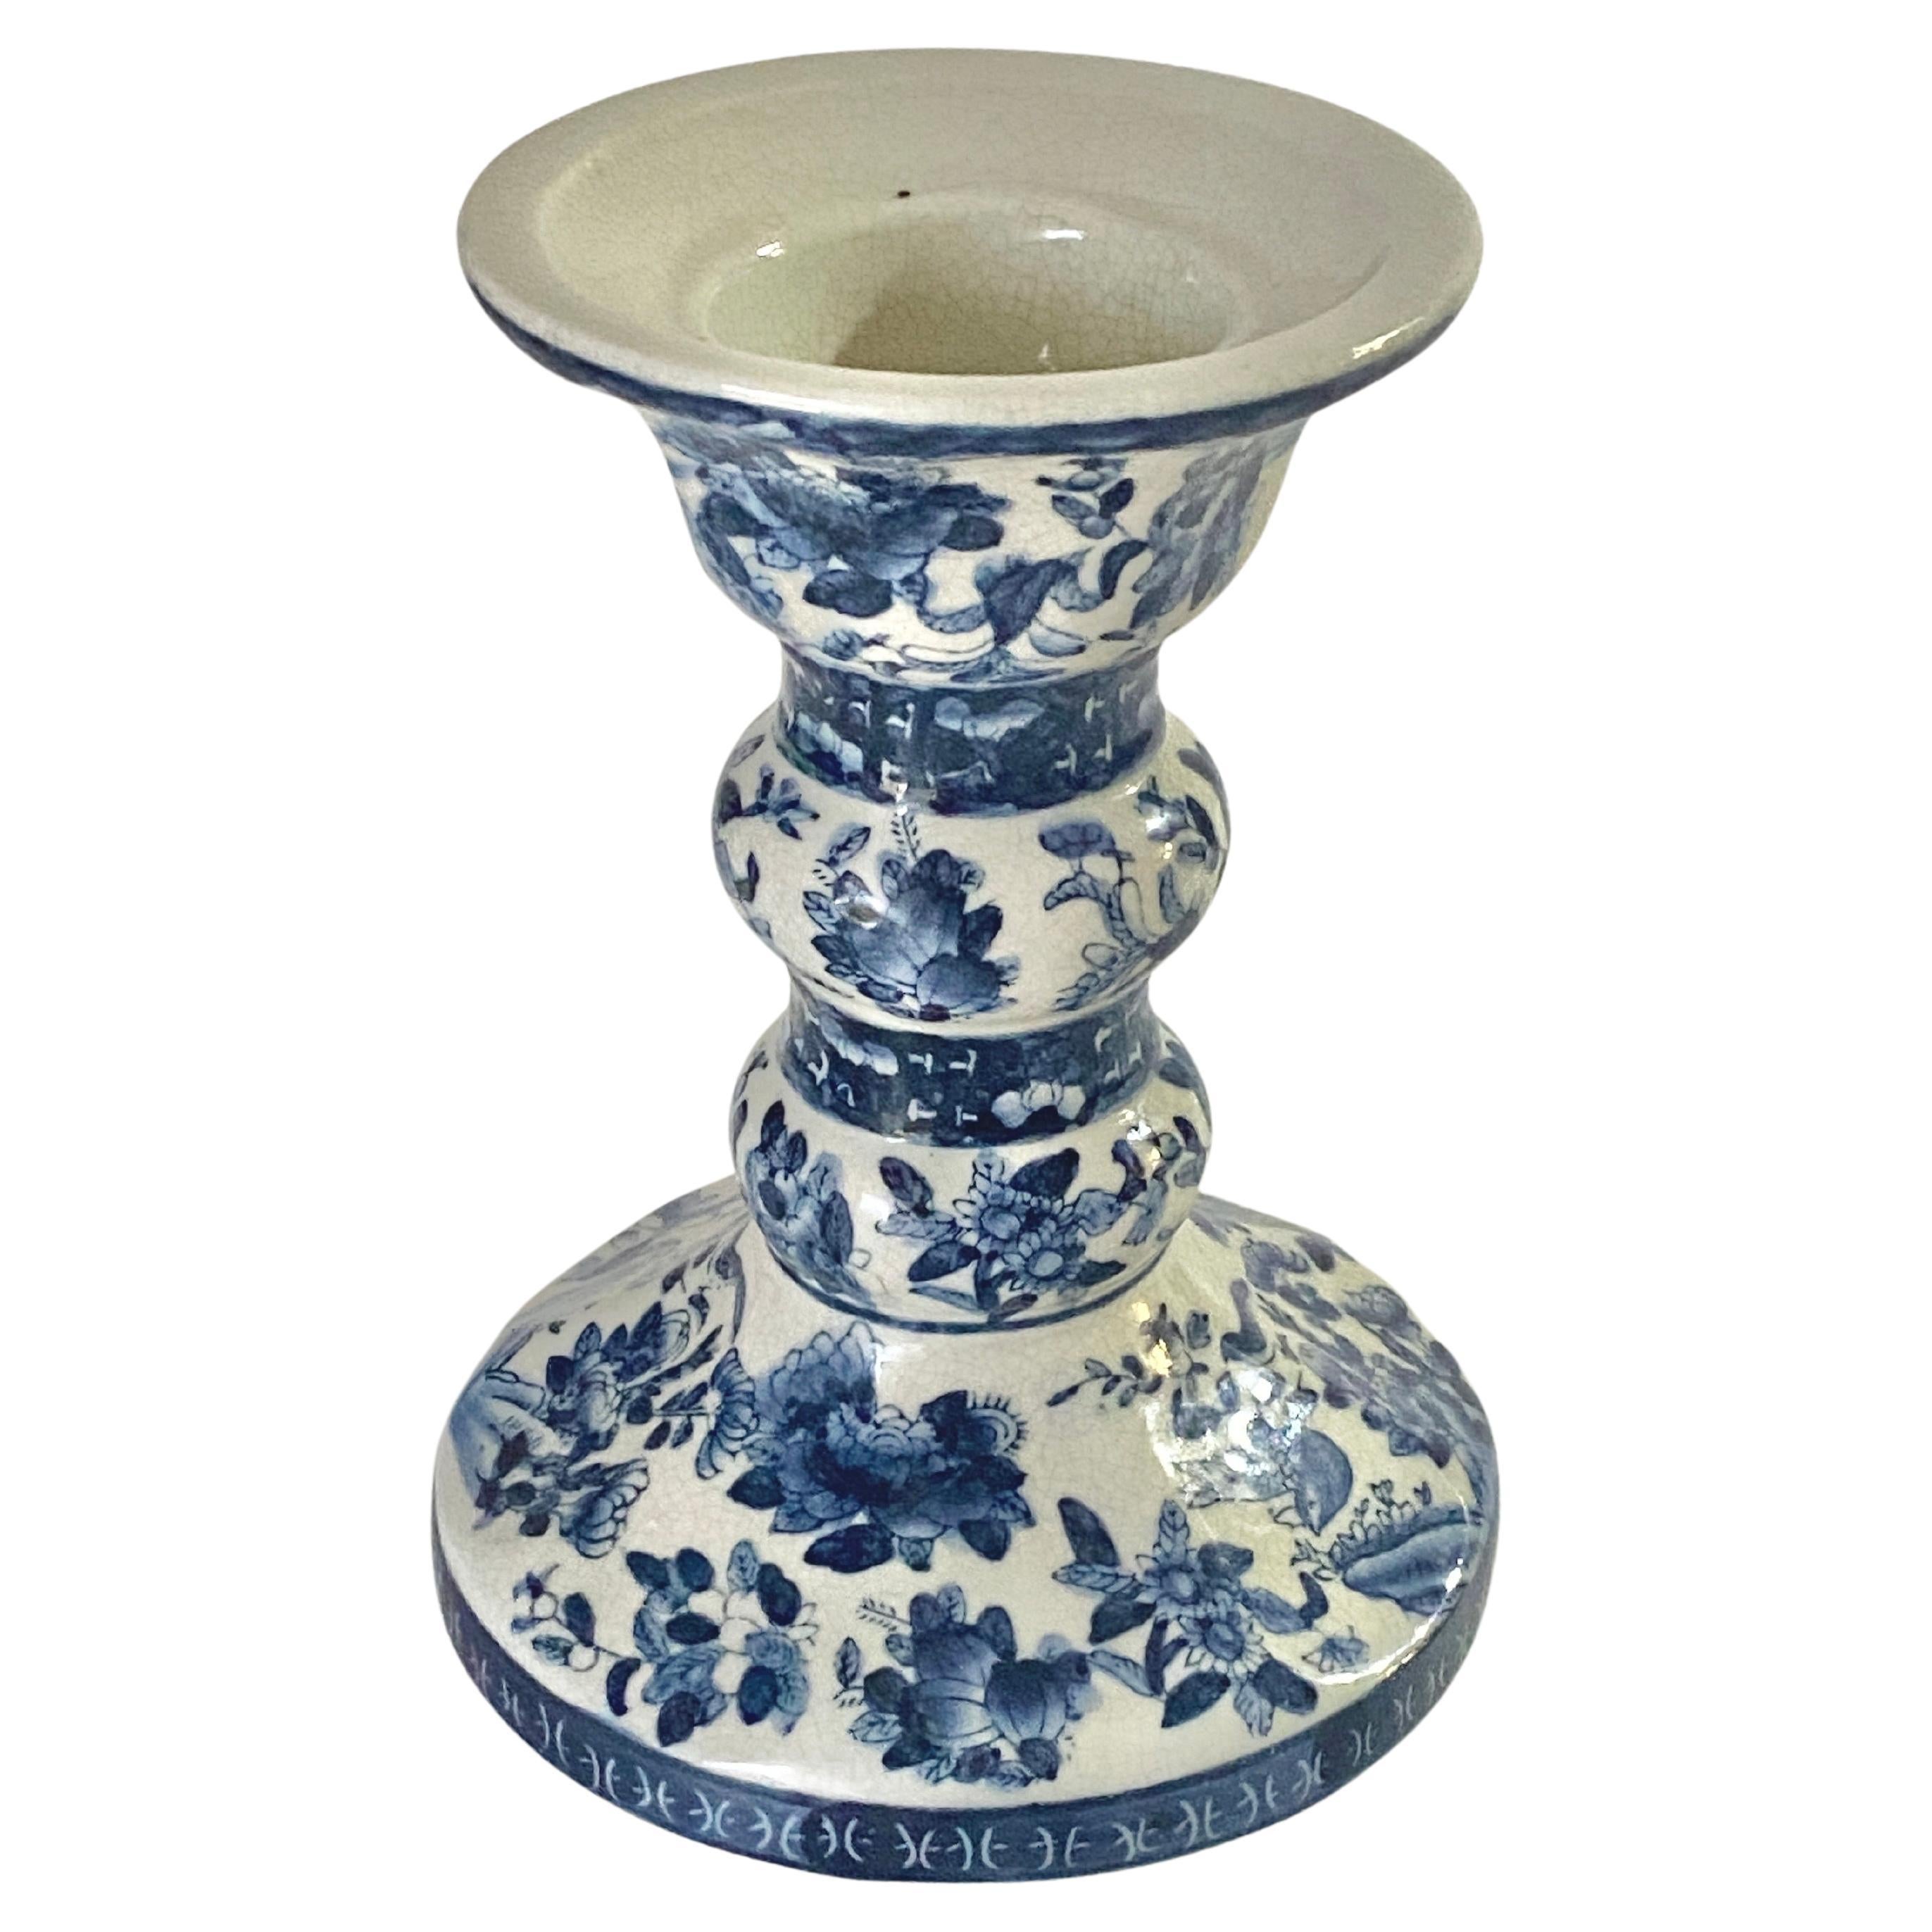 Vase de Chine, 19e siècle, bleu et blanc, porcelaine